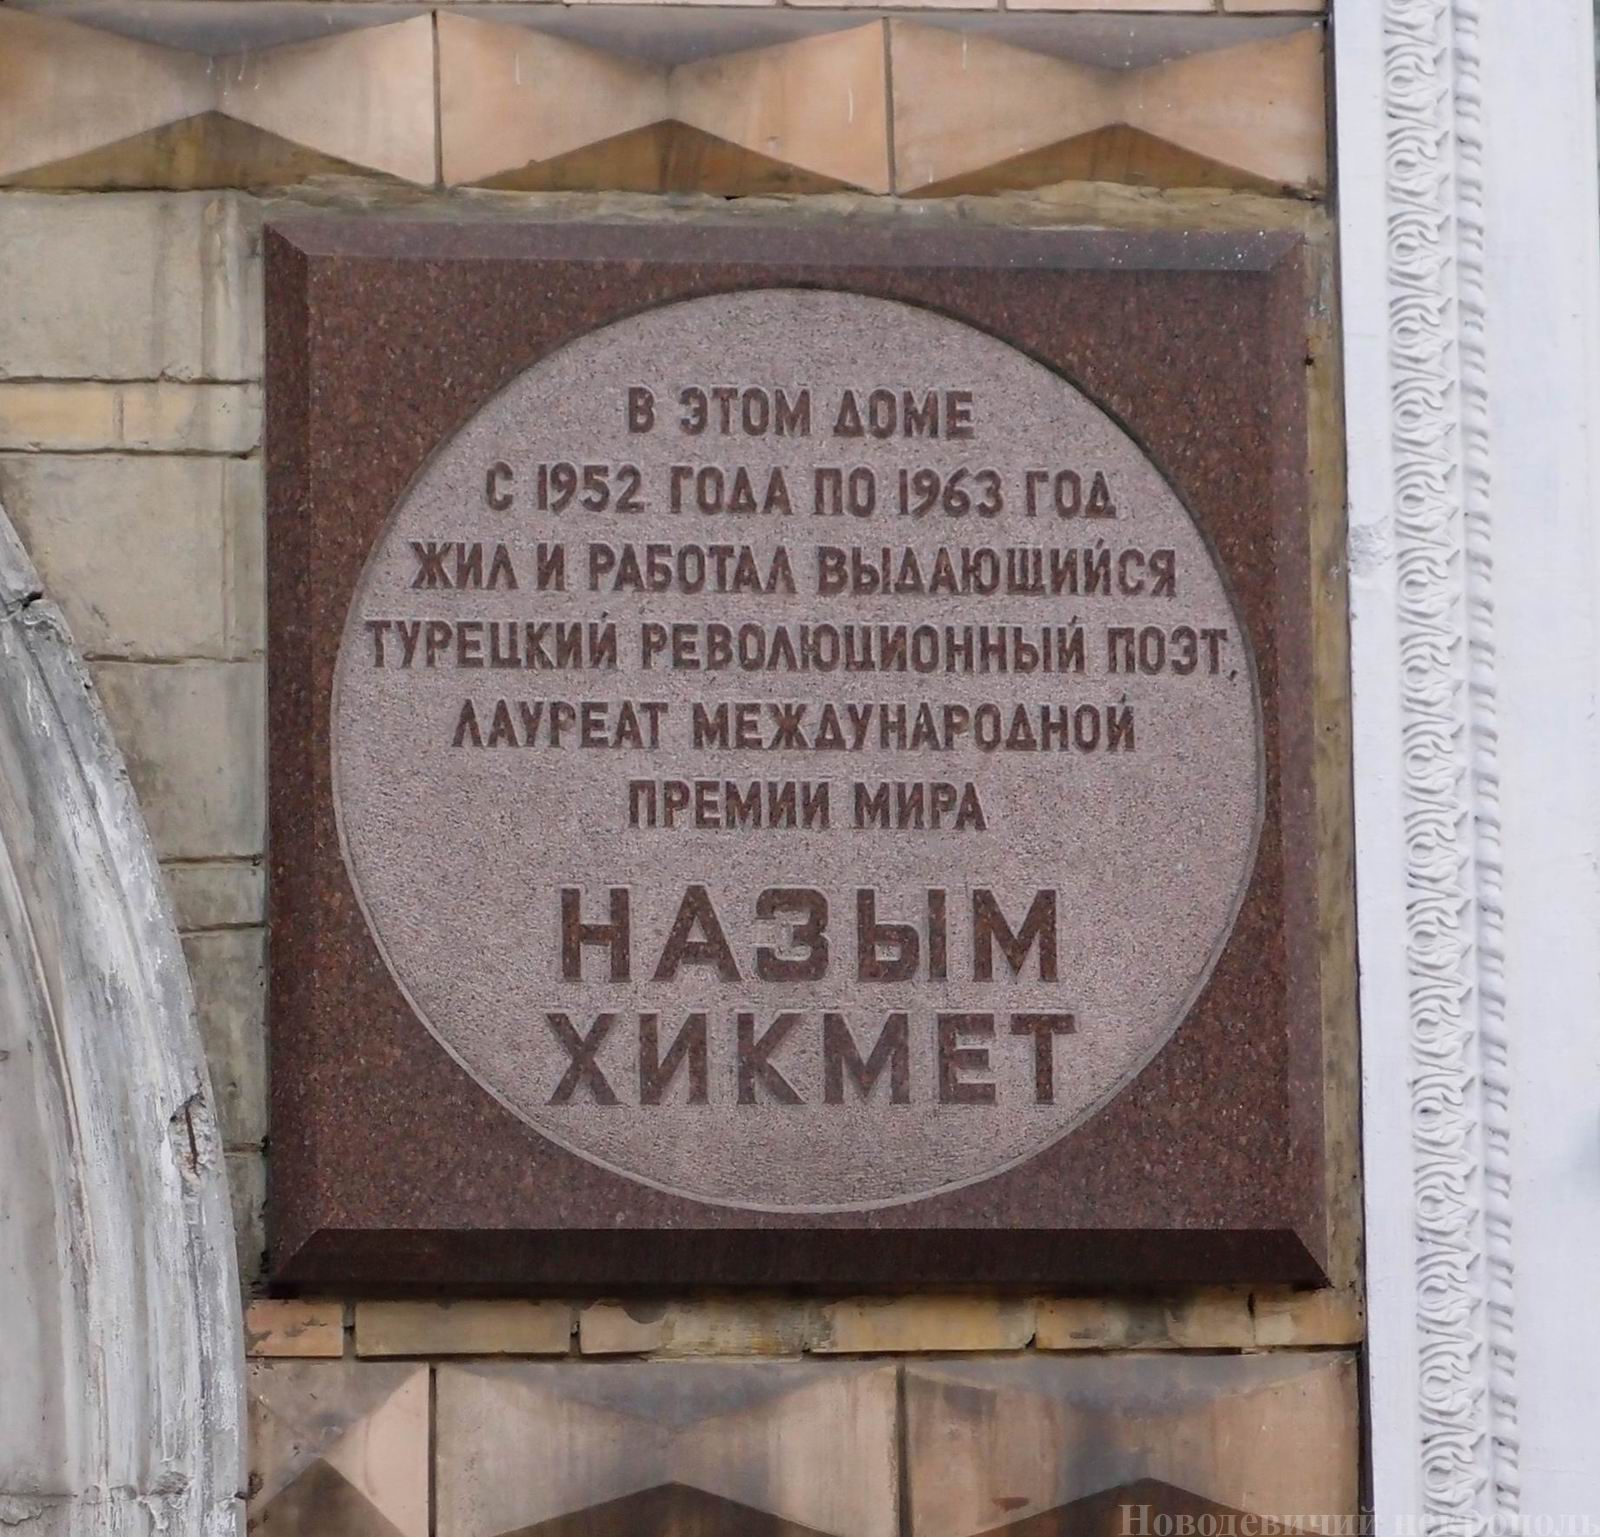 Мемориальная доска Назыму Хикмету (1902-1963), арх. Ю.П.Платонов и П.Ю.Андреев, на 2-й Песчаной улице, дом 6, открыта 24.6.1976.